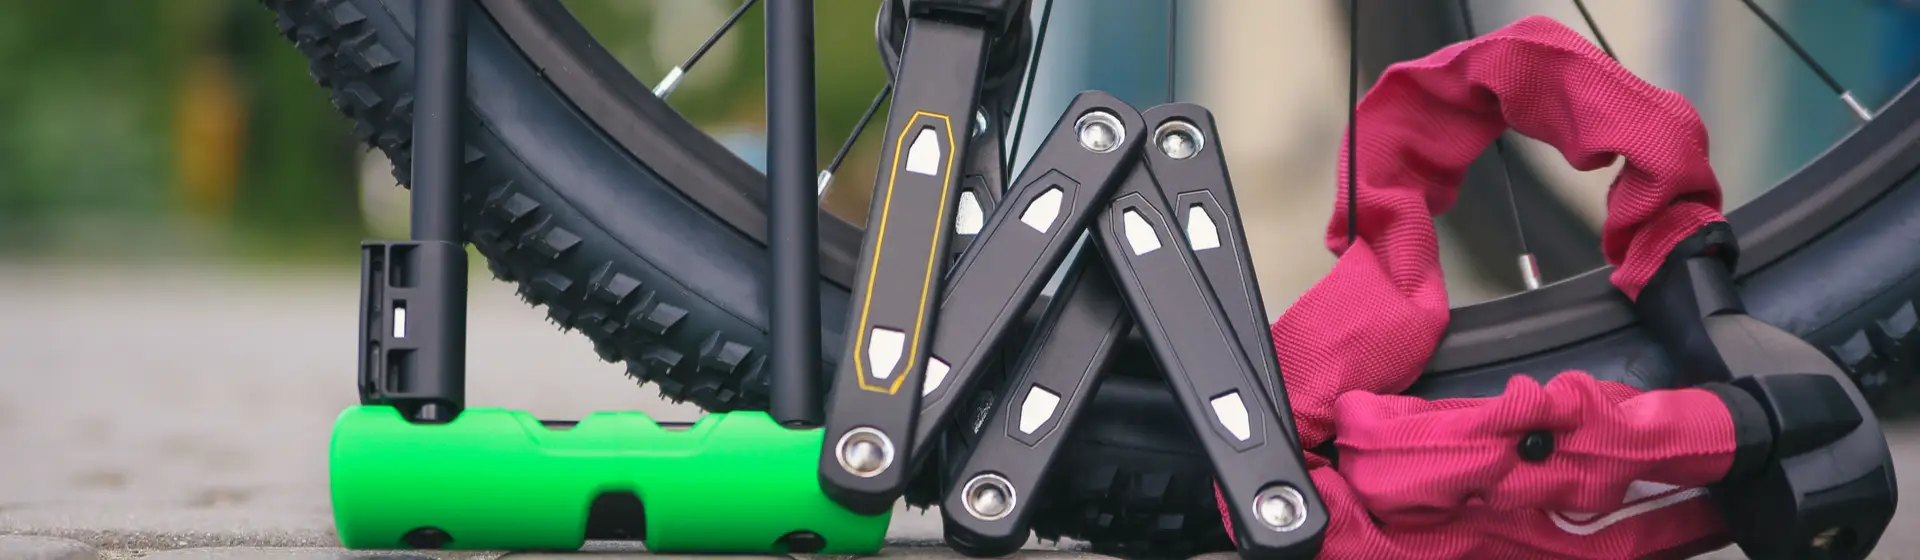 Cadeado para bicicleta: 6 modelos mais seguros